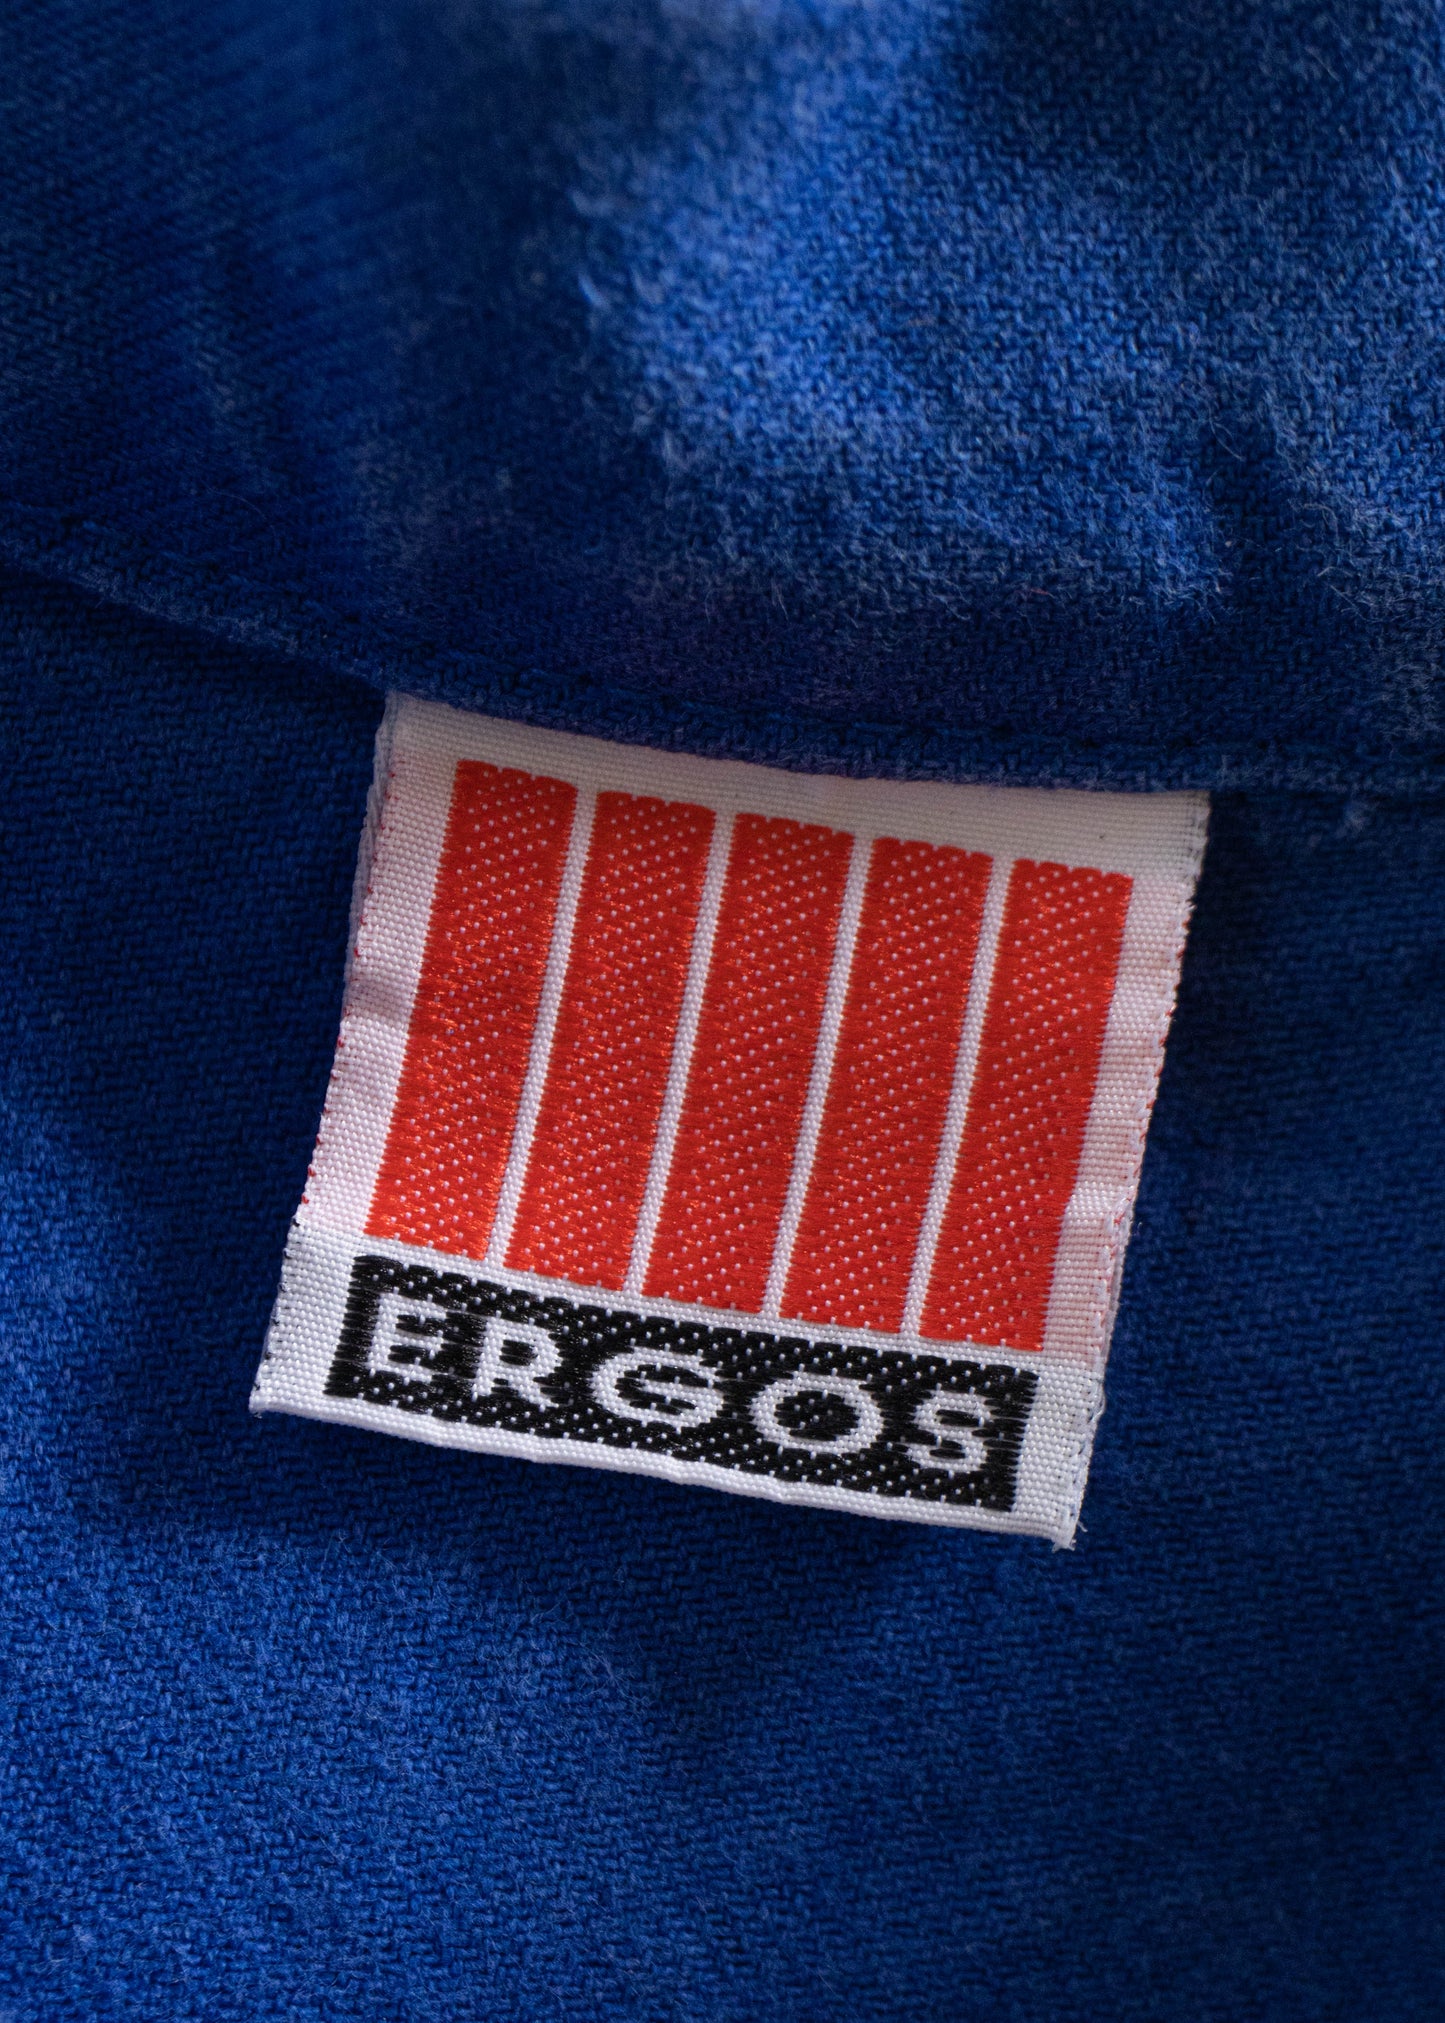 1980s Ergos French Workwear Chore Jacket Size M/L